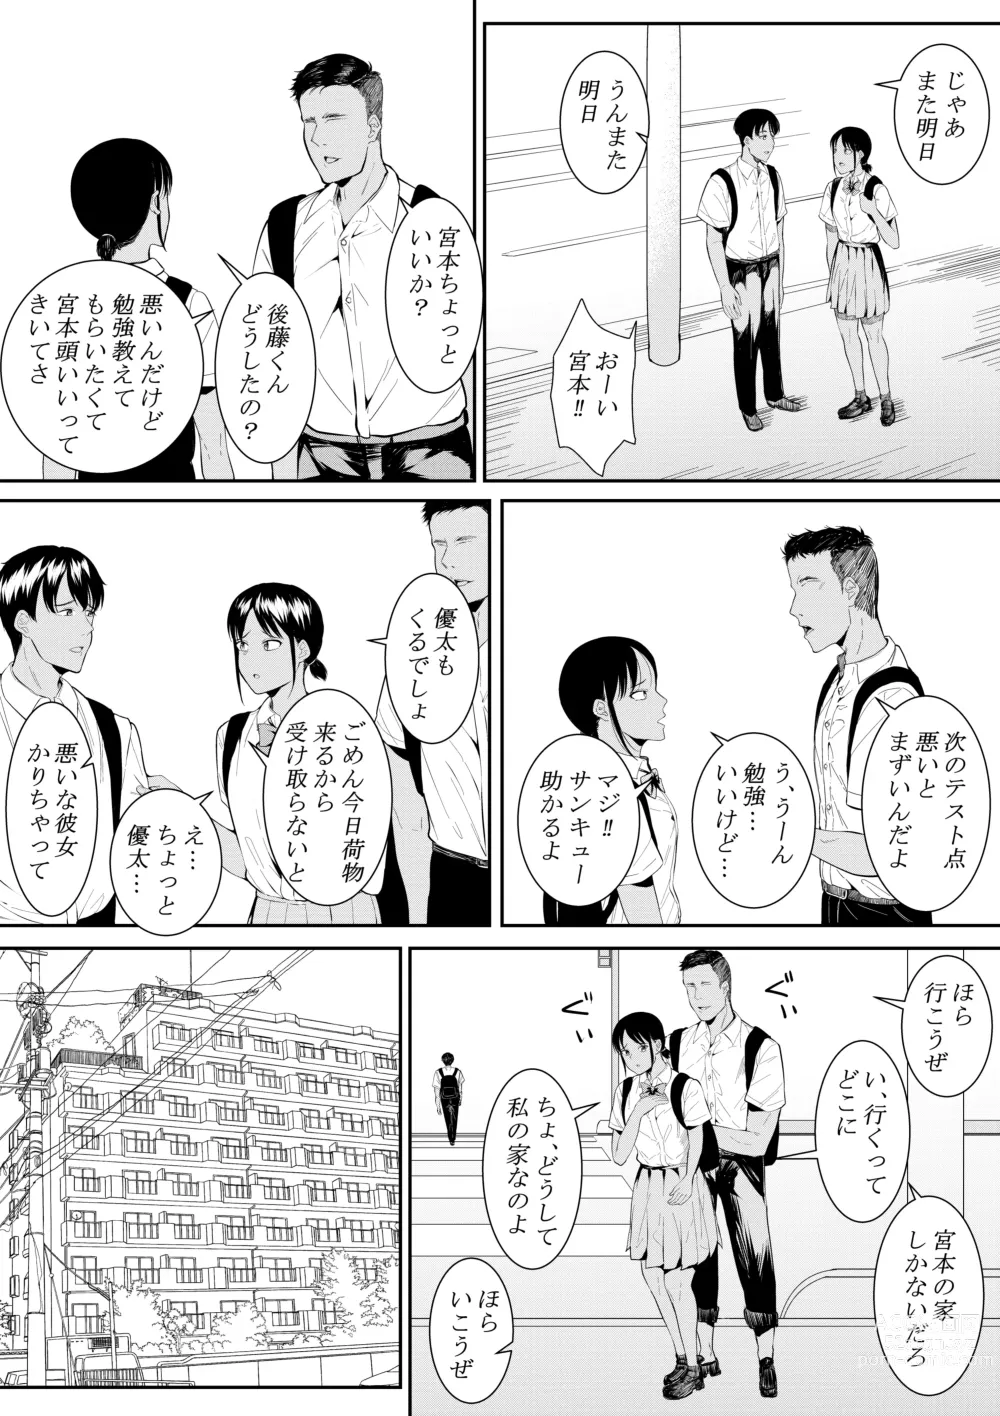 Page 12 of doujinshi Nigatena Aitsu ni Benkyou wo Oshieru Koto ni Natte…